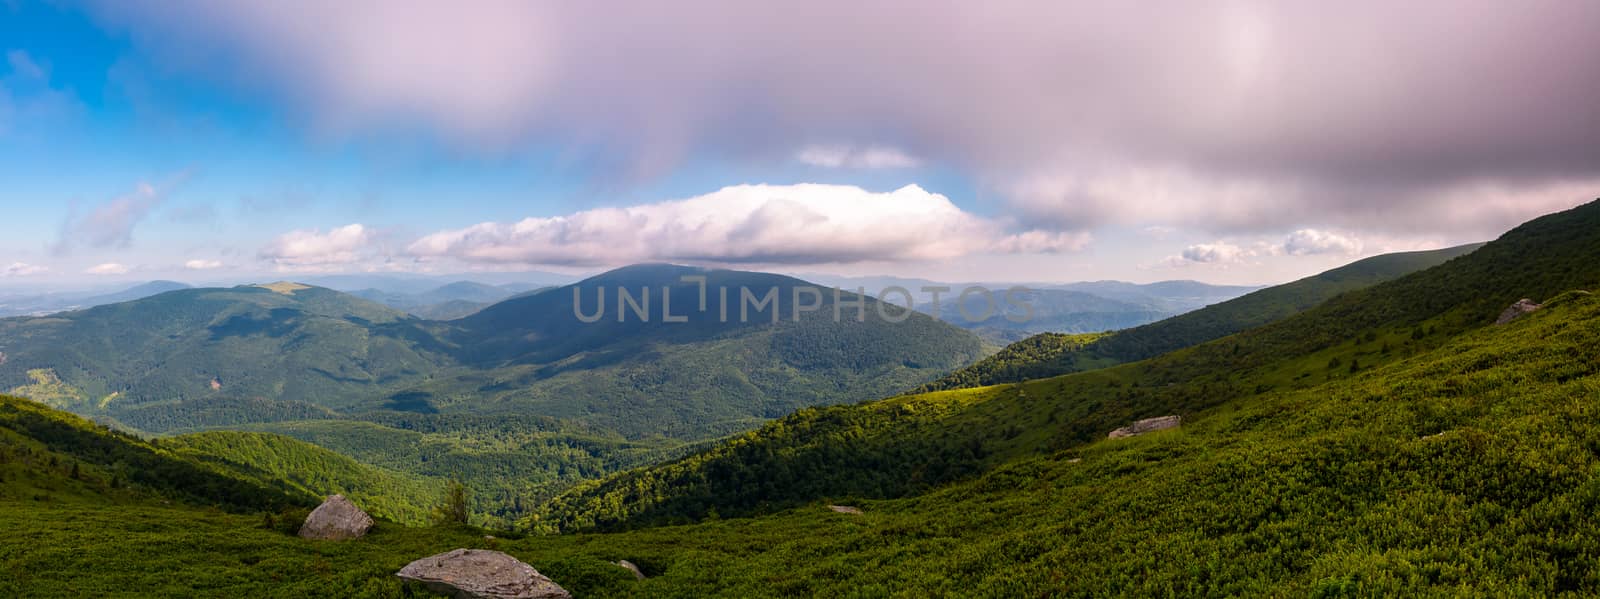 panorama of beautiful mountain landscape by Pellinni